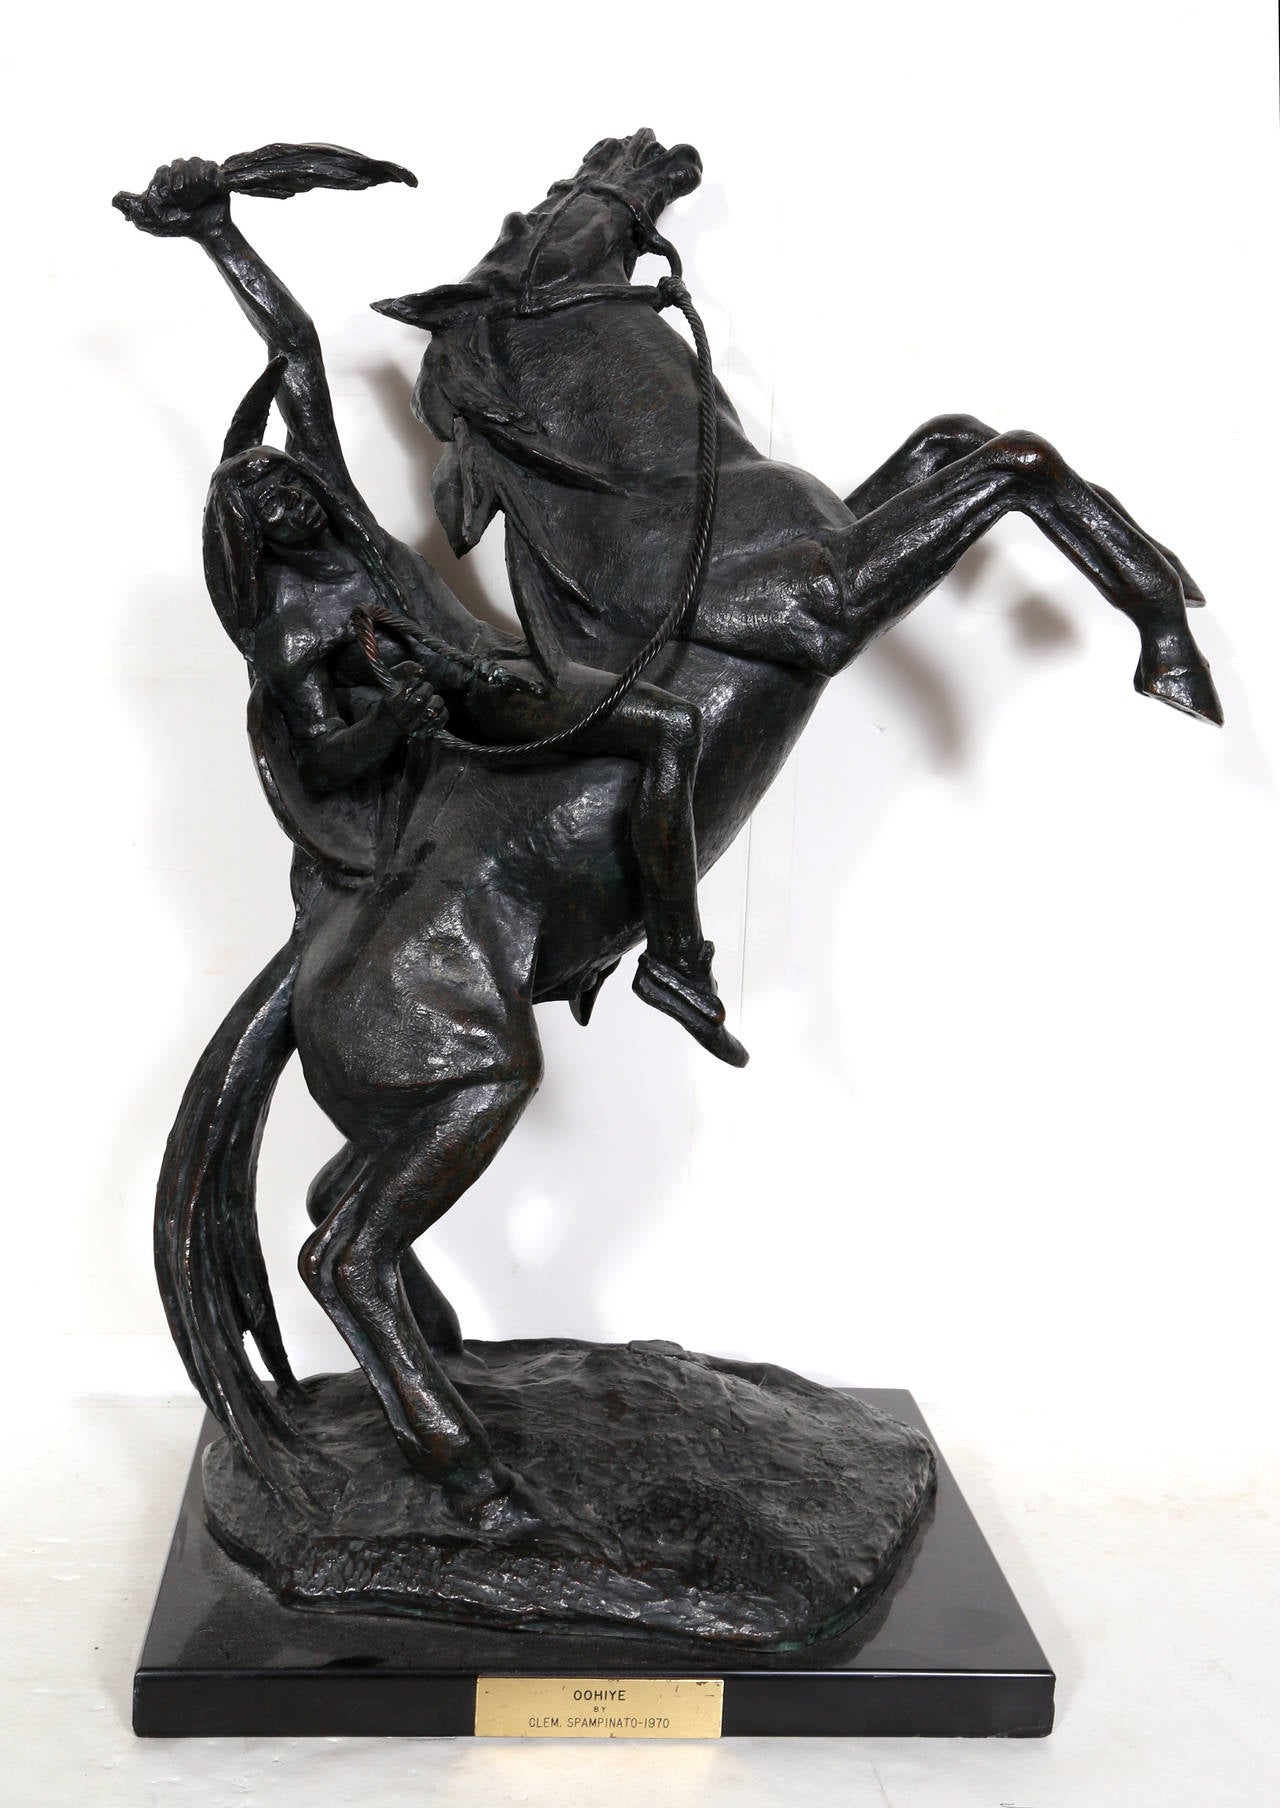 Als klassisches Relikt des amerikanischen Westens ist Spampinatos exquisite, massive Bronzeskulptur voller Schönheit, Anmut und Action. Auf der Skulptur eingravierte Signatur und auf dem Sockel gestempelte Platte. 

Titel: Oohiye
Jahr: